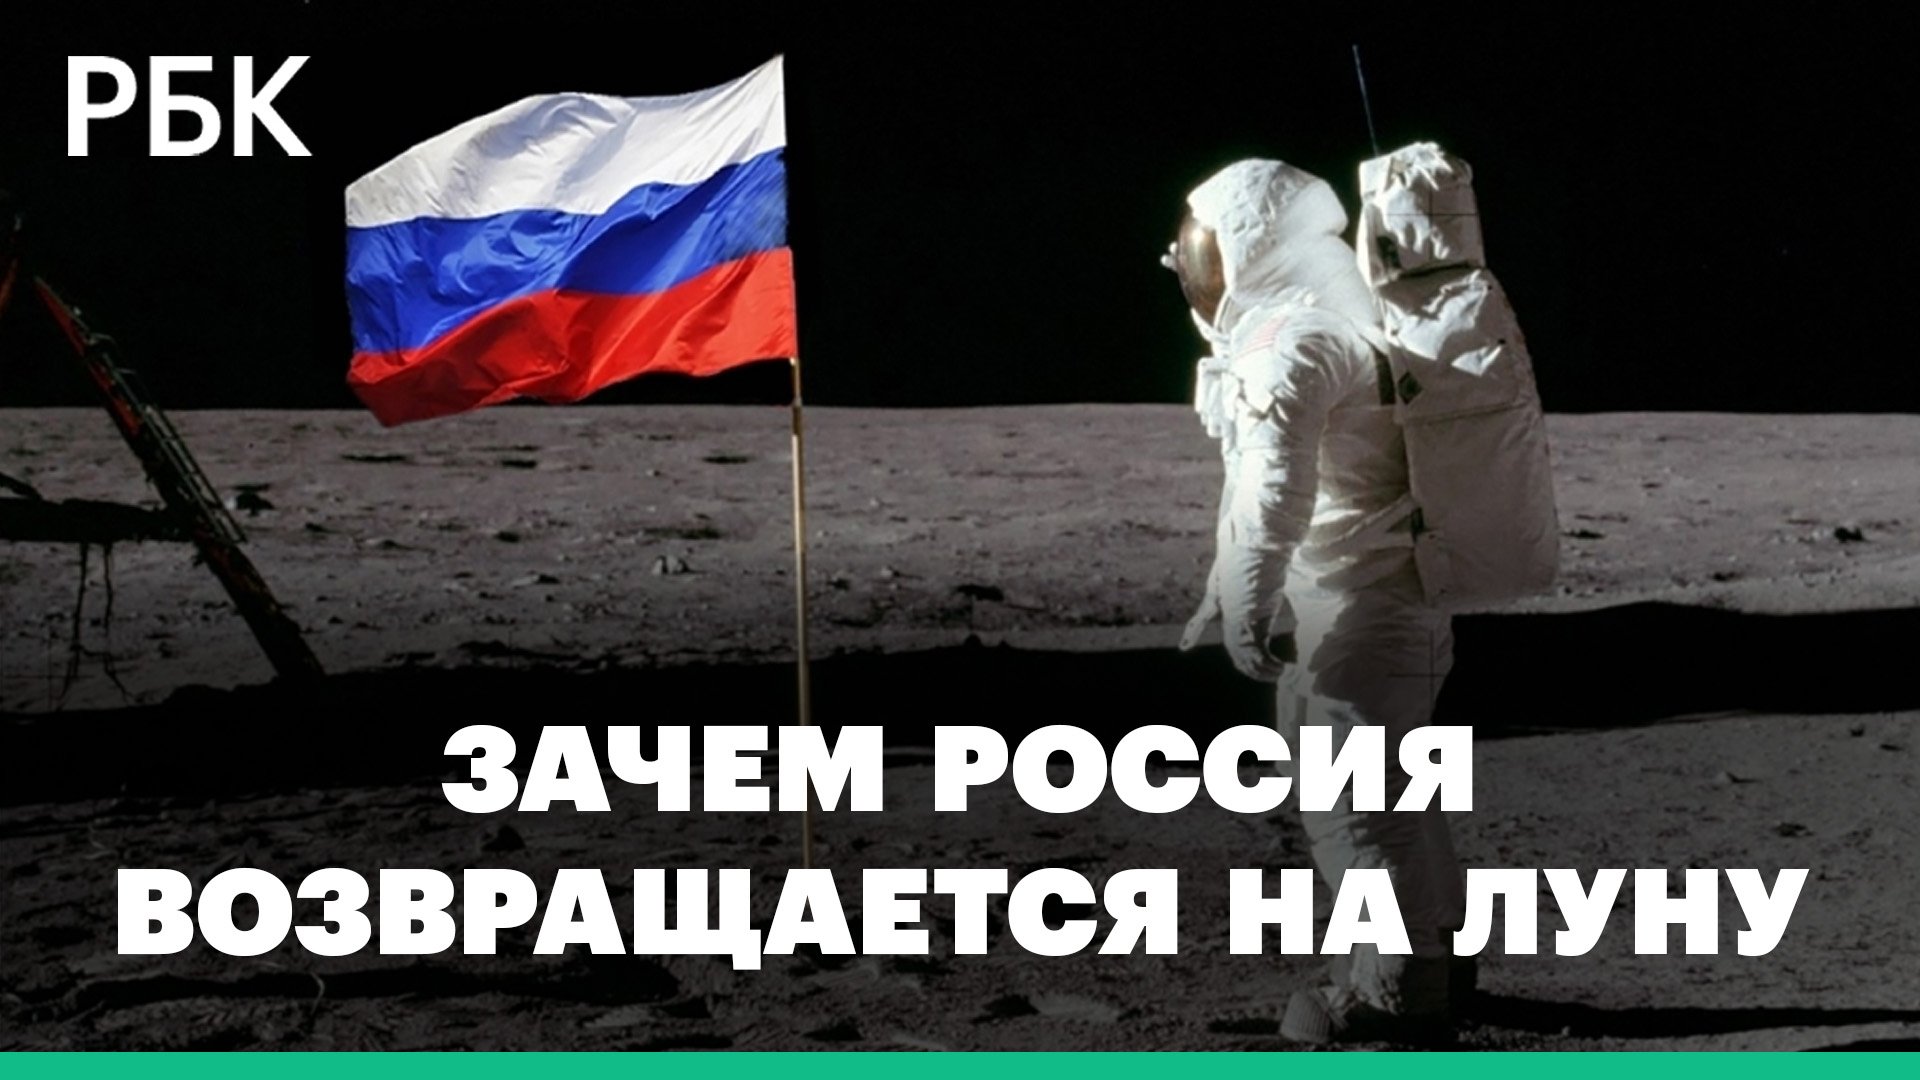 Россия возобновляет лунную программу и готовится запустить станцию «Луна-25». Цели и значение проект